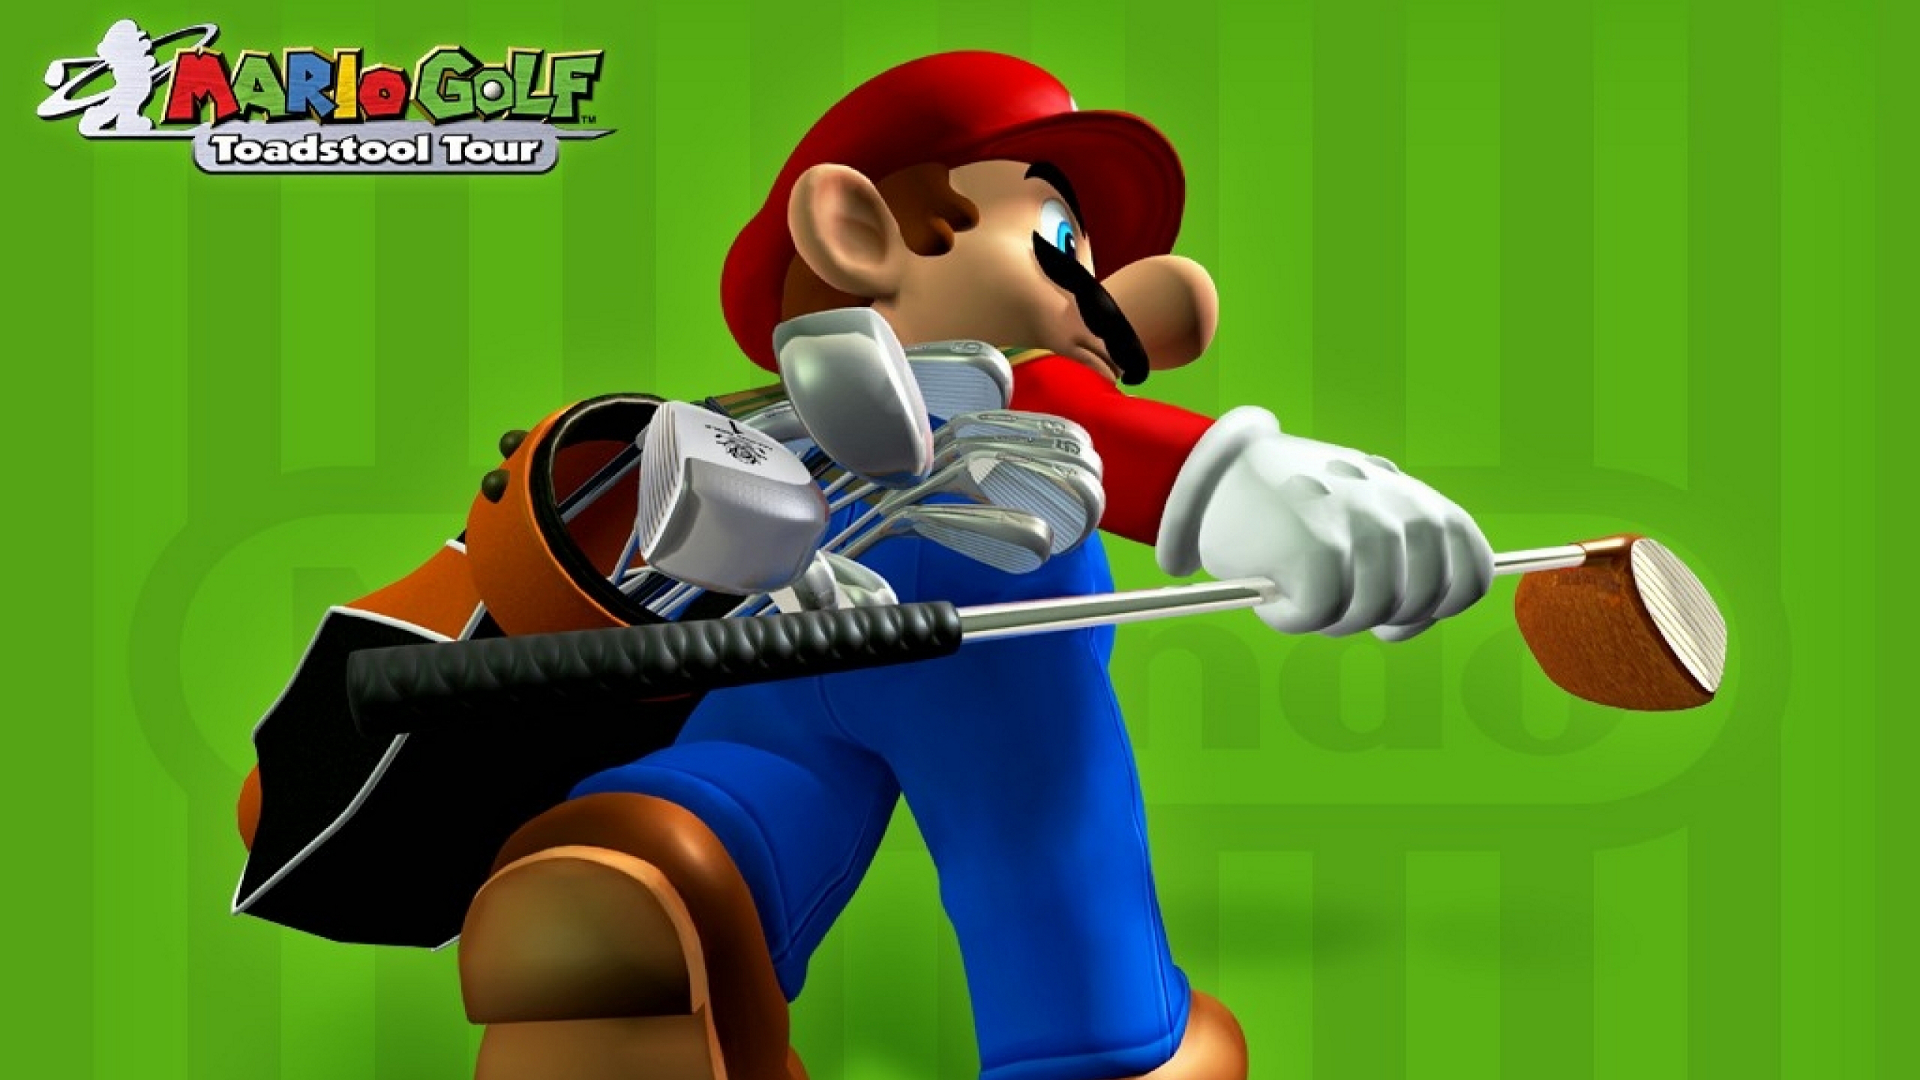 Descargar fondos de escritorio de Mario Golf: Family Tour HD